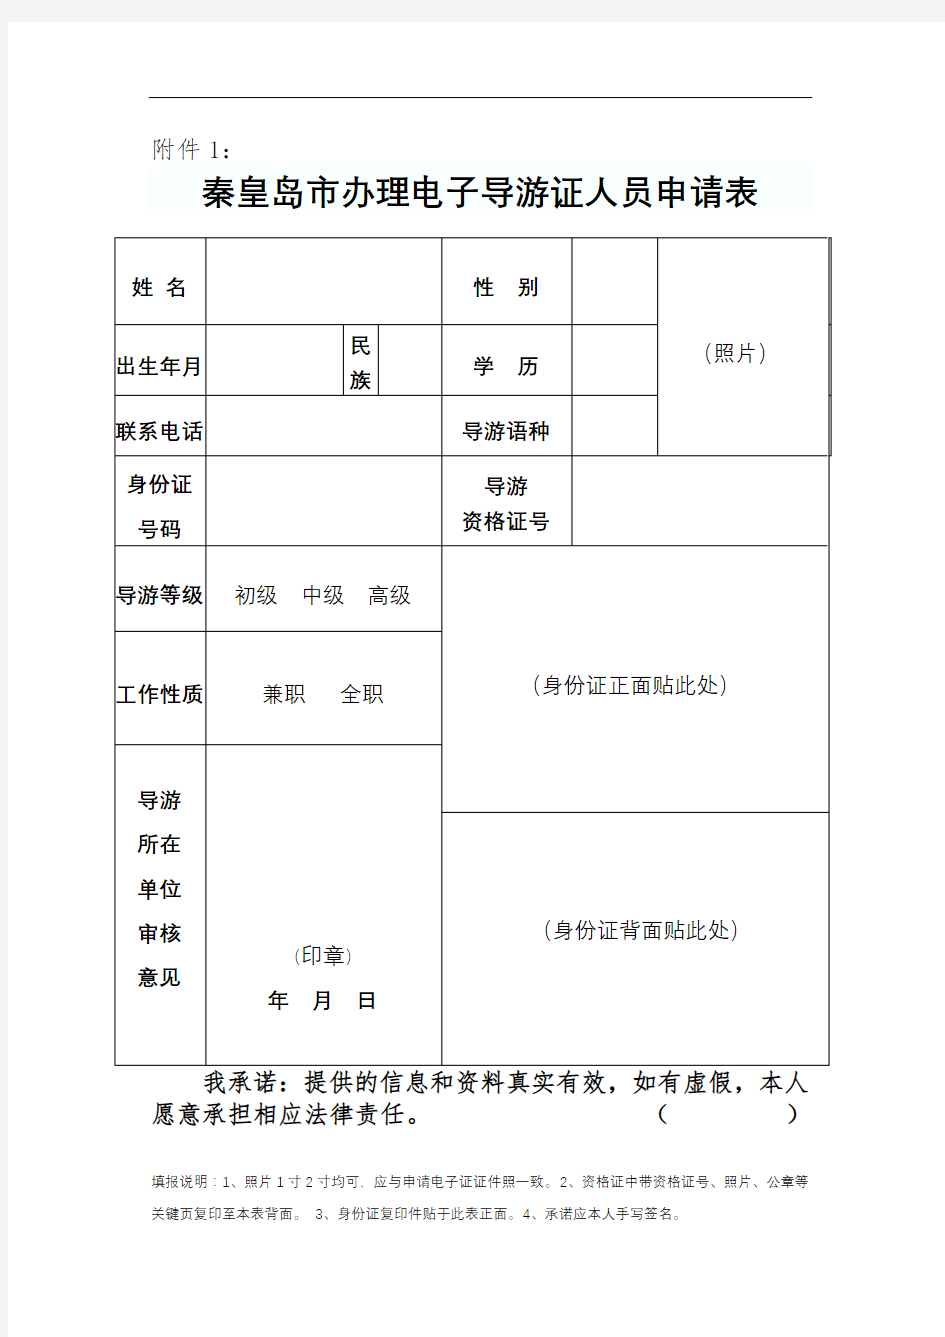 秦皇岛市办理电子导游证人员申请表【模板】